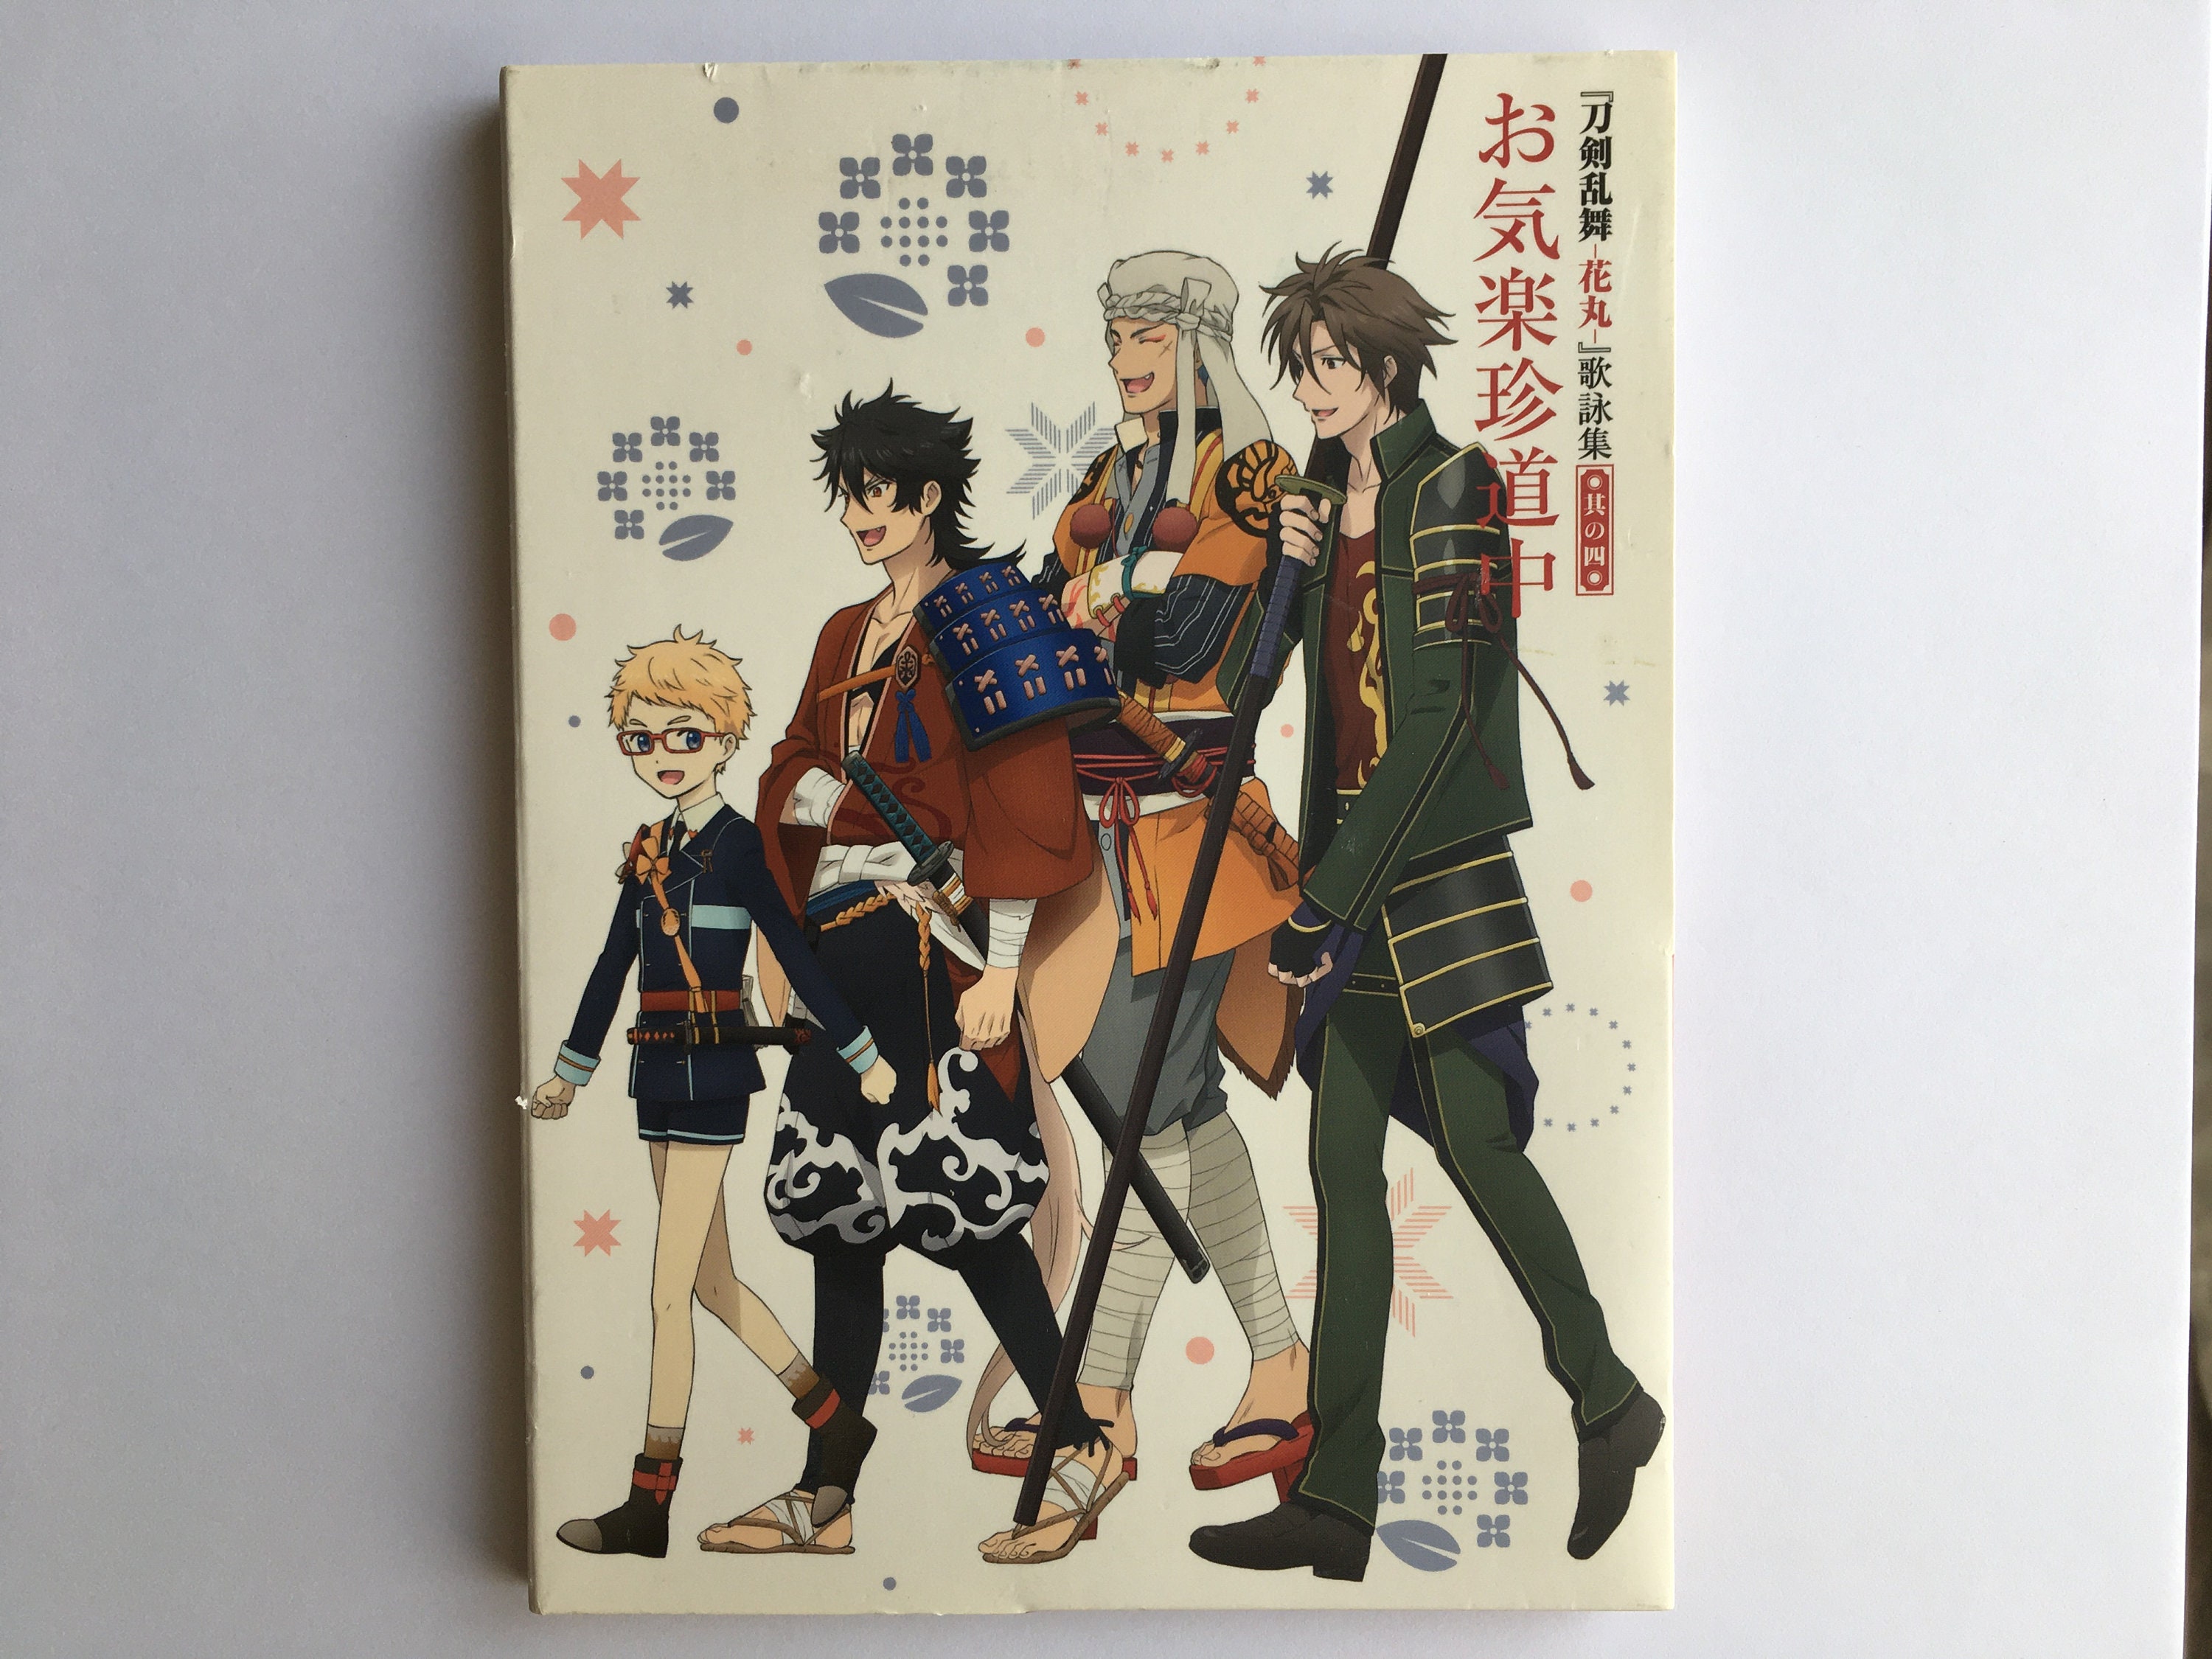 Tensei Shitara Slime Datta Ken Season 1+2+Tensura Nikki +OVA Anime DVD Box  Set